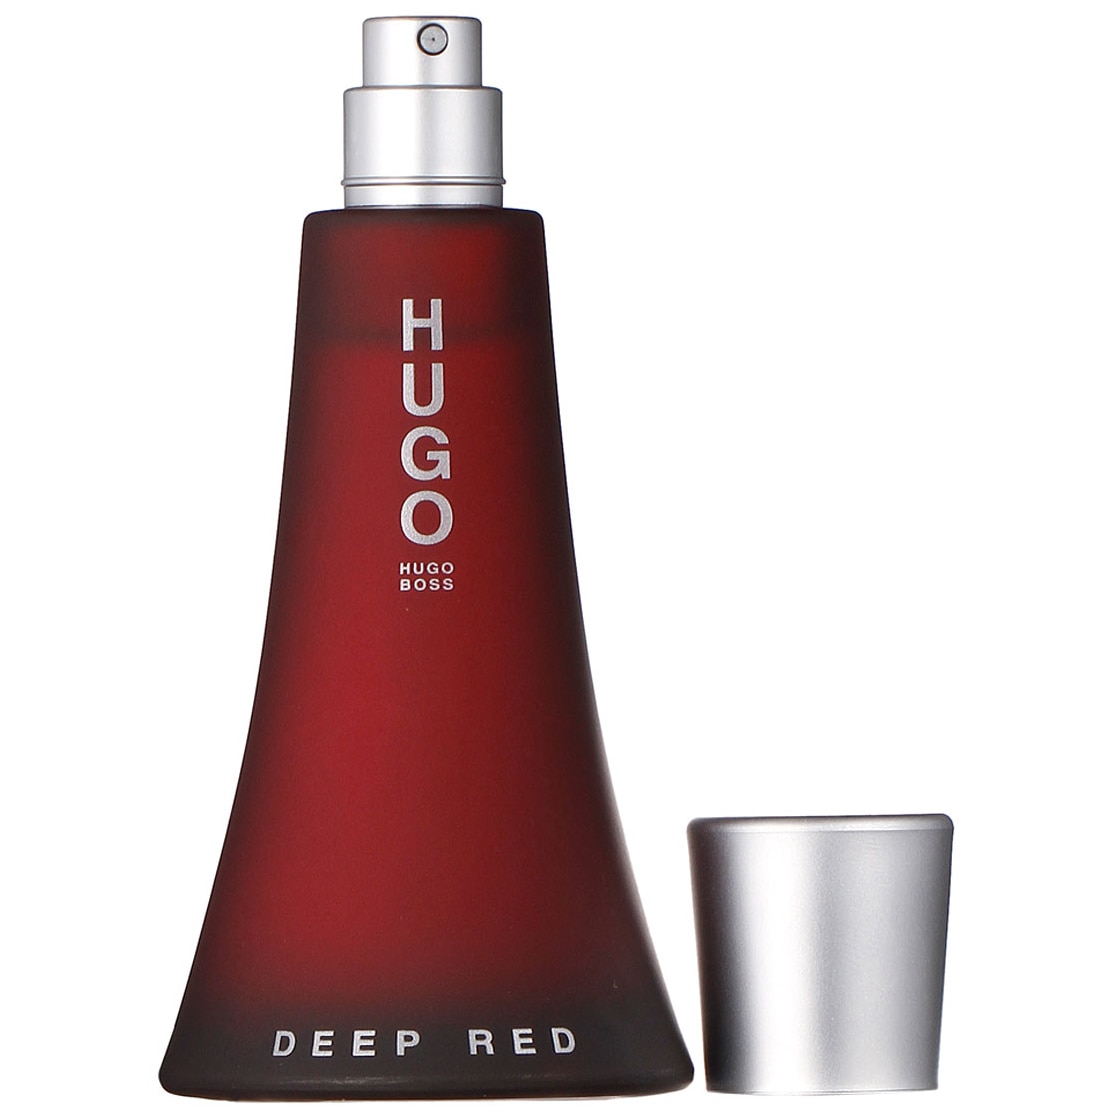 Хуго босс ред. Hugo Boss Deep Red 50ml. Boss Hugo Deep Red 90ml EDP. Deep Red Hugo Boss 90 ml. Духи Хьюго босс дип ред.